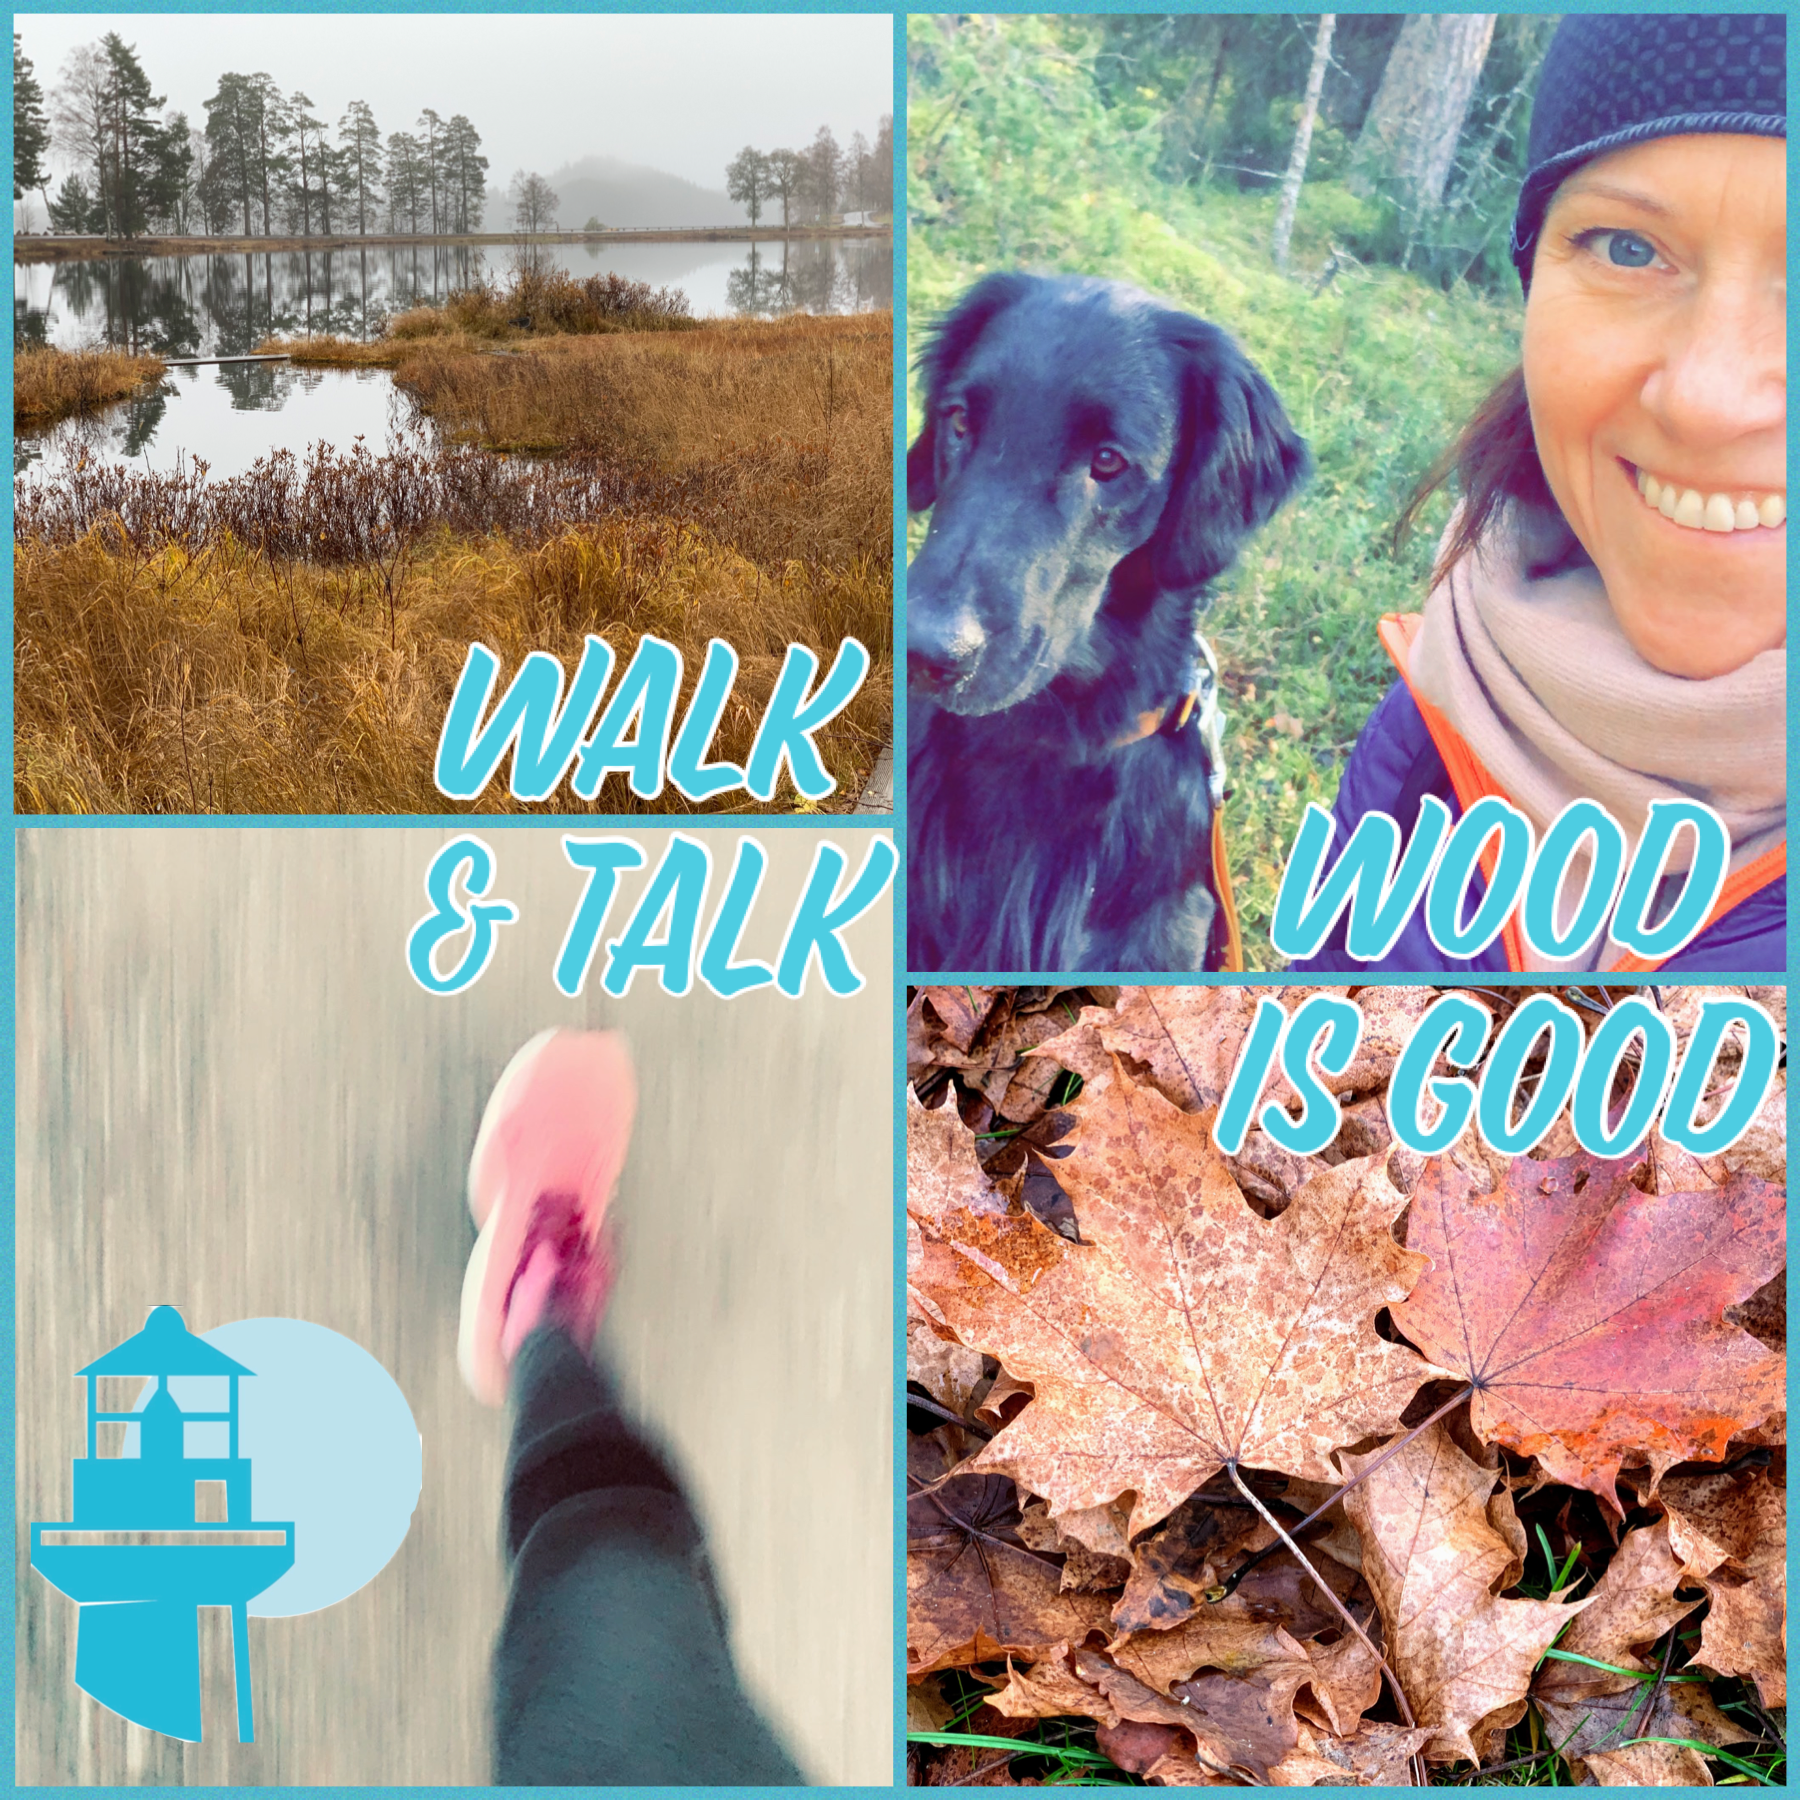 Wood is good, om walk & talk-möten med skogsbad